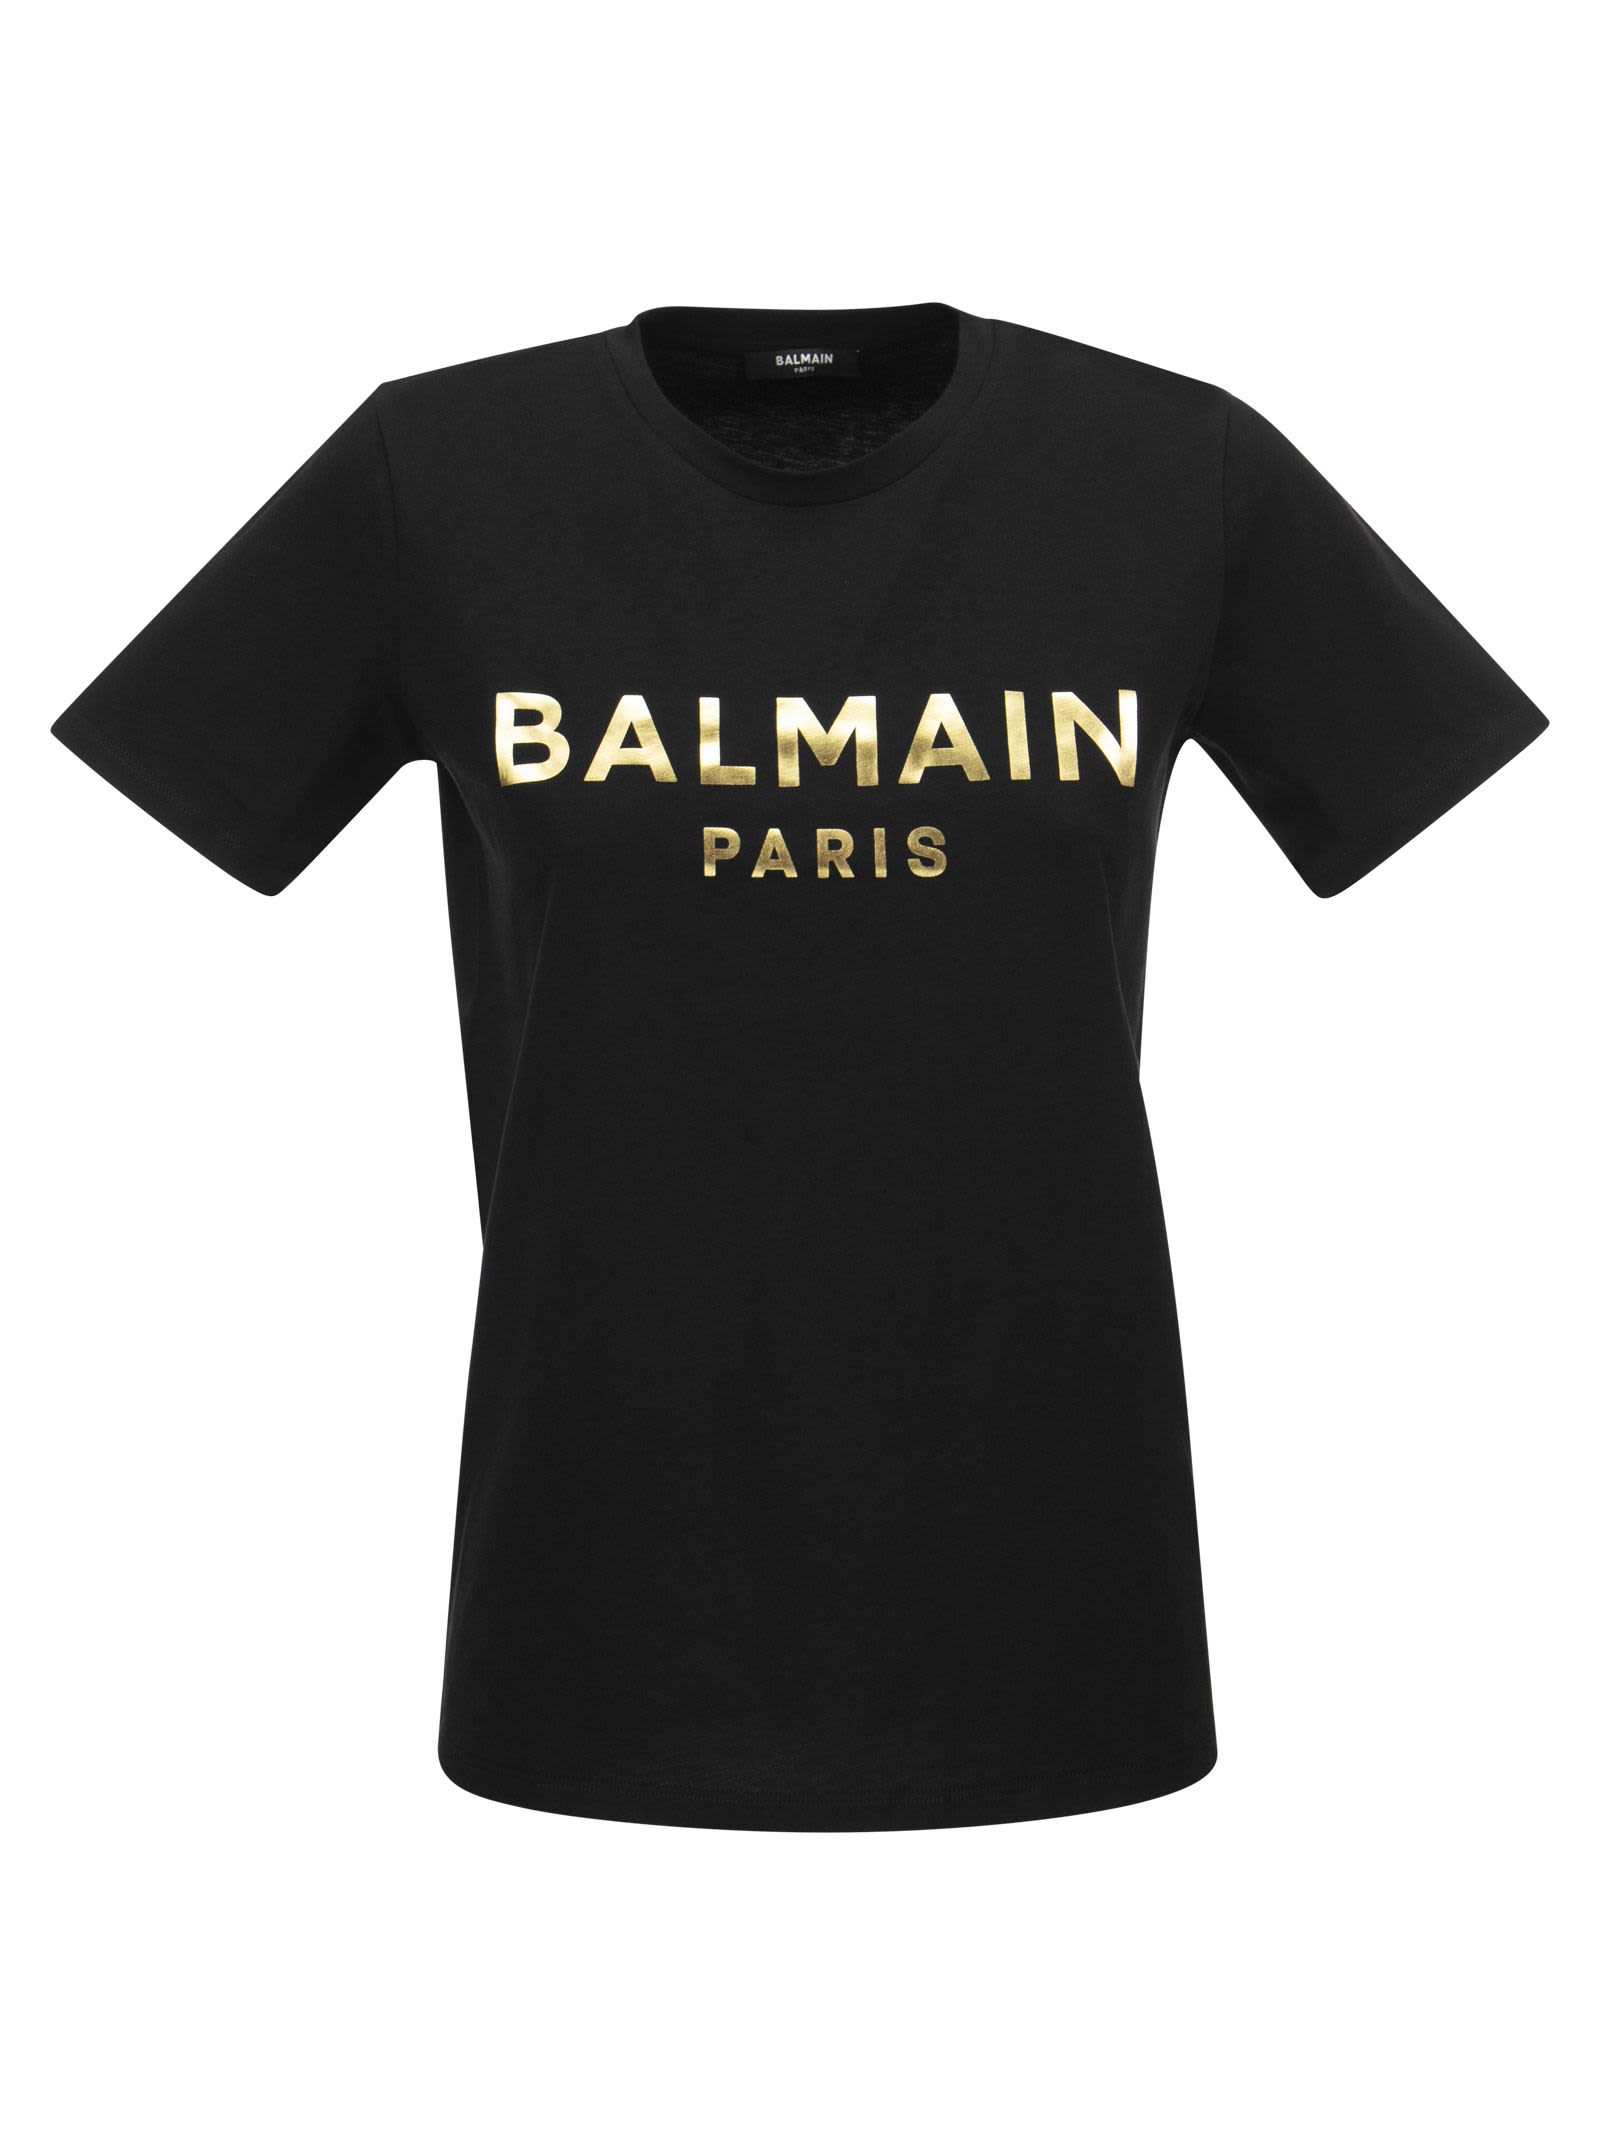 Balmain T-shirt With Gold Print